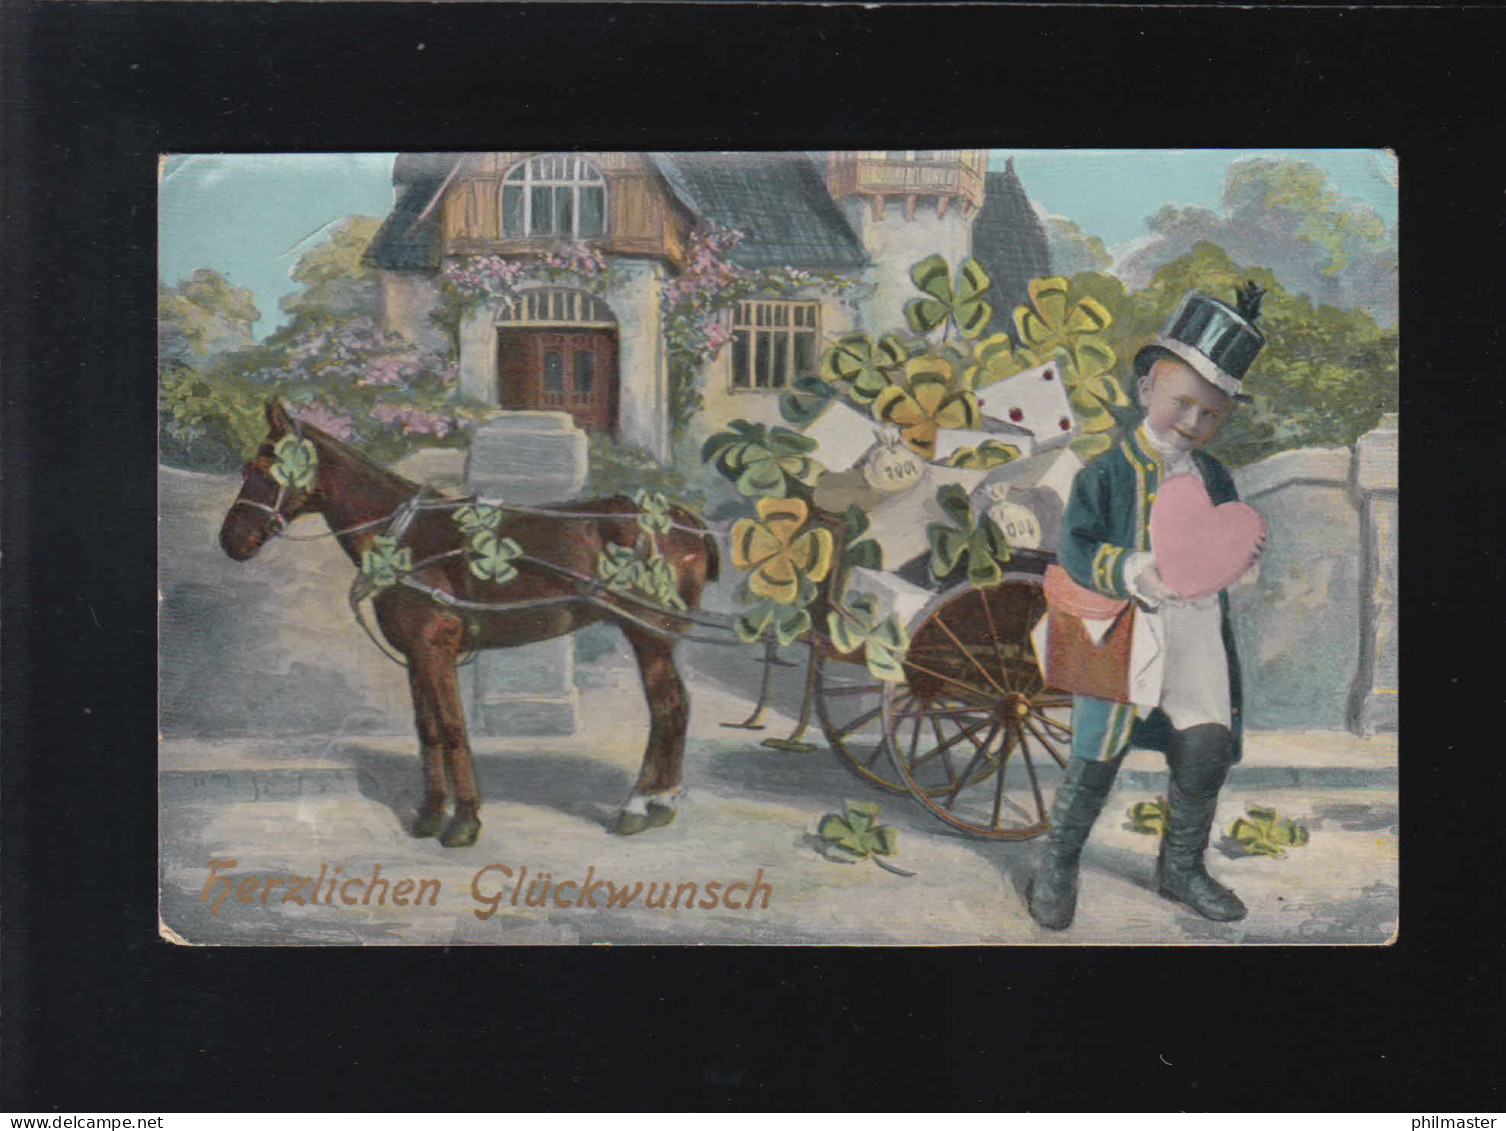 Pferdefuhrwerk Glücksklee Geschenke Herzlichen Glückwunsch, Forchheim 25.12.1910 - Halt Gegen Das Licht/Durchscheink.